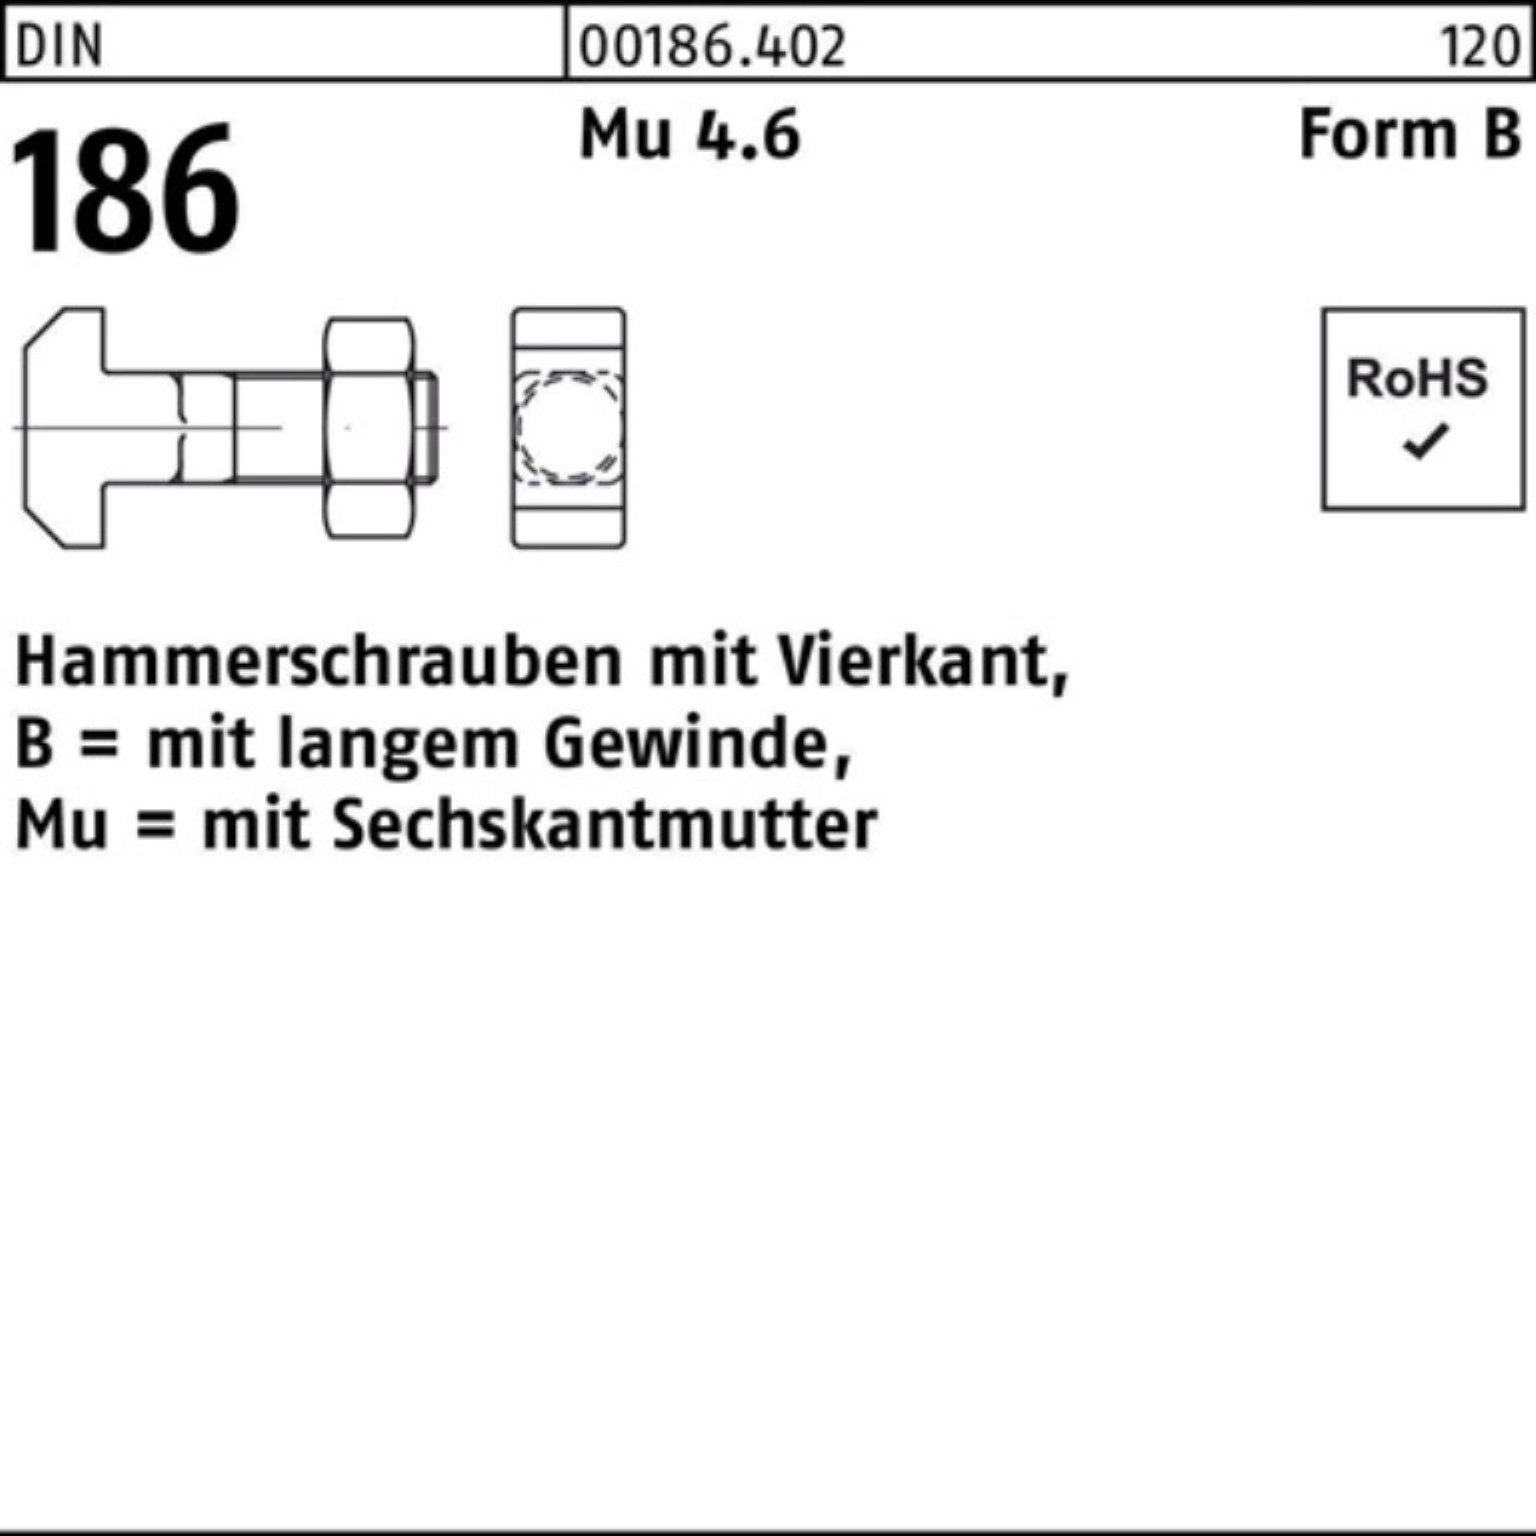 Reyher Schraube 100er Pack Hammerschraube DIN 186 FormB Vierkant 6-ktmutter BM 20x 140